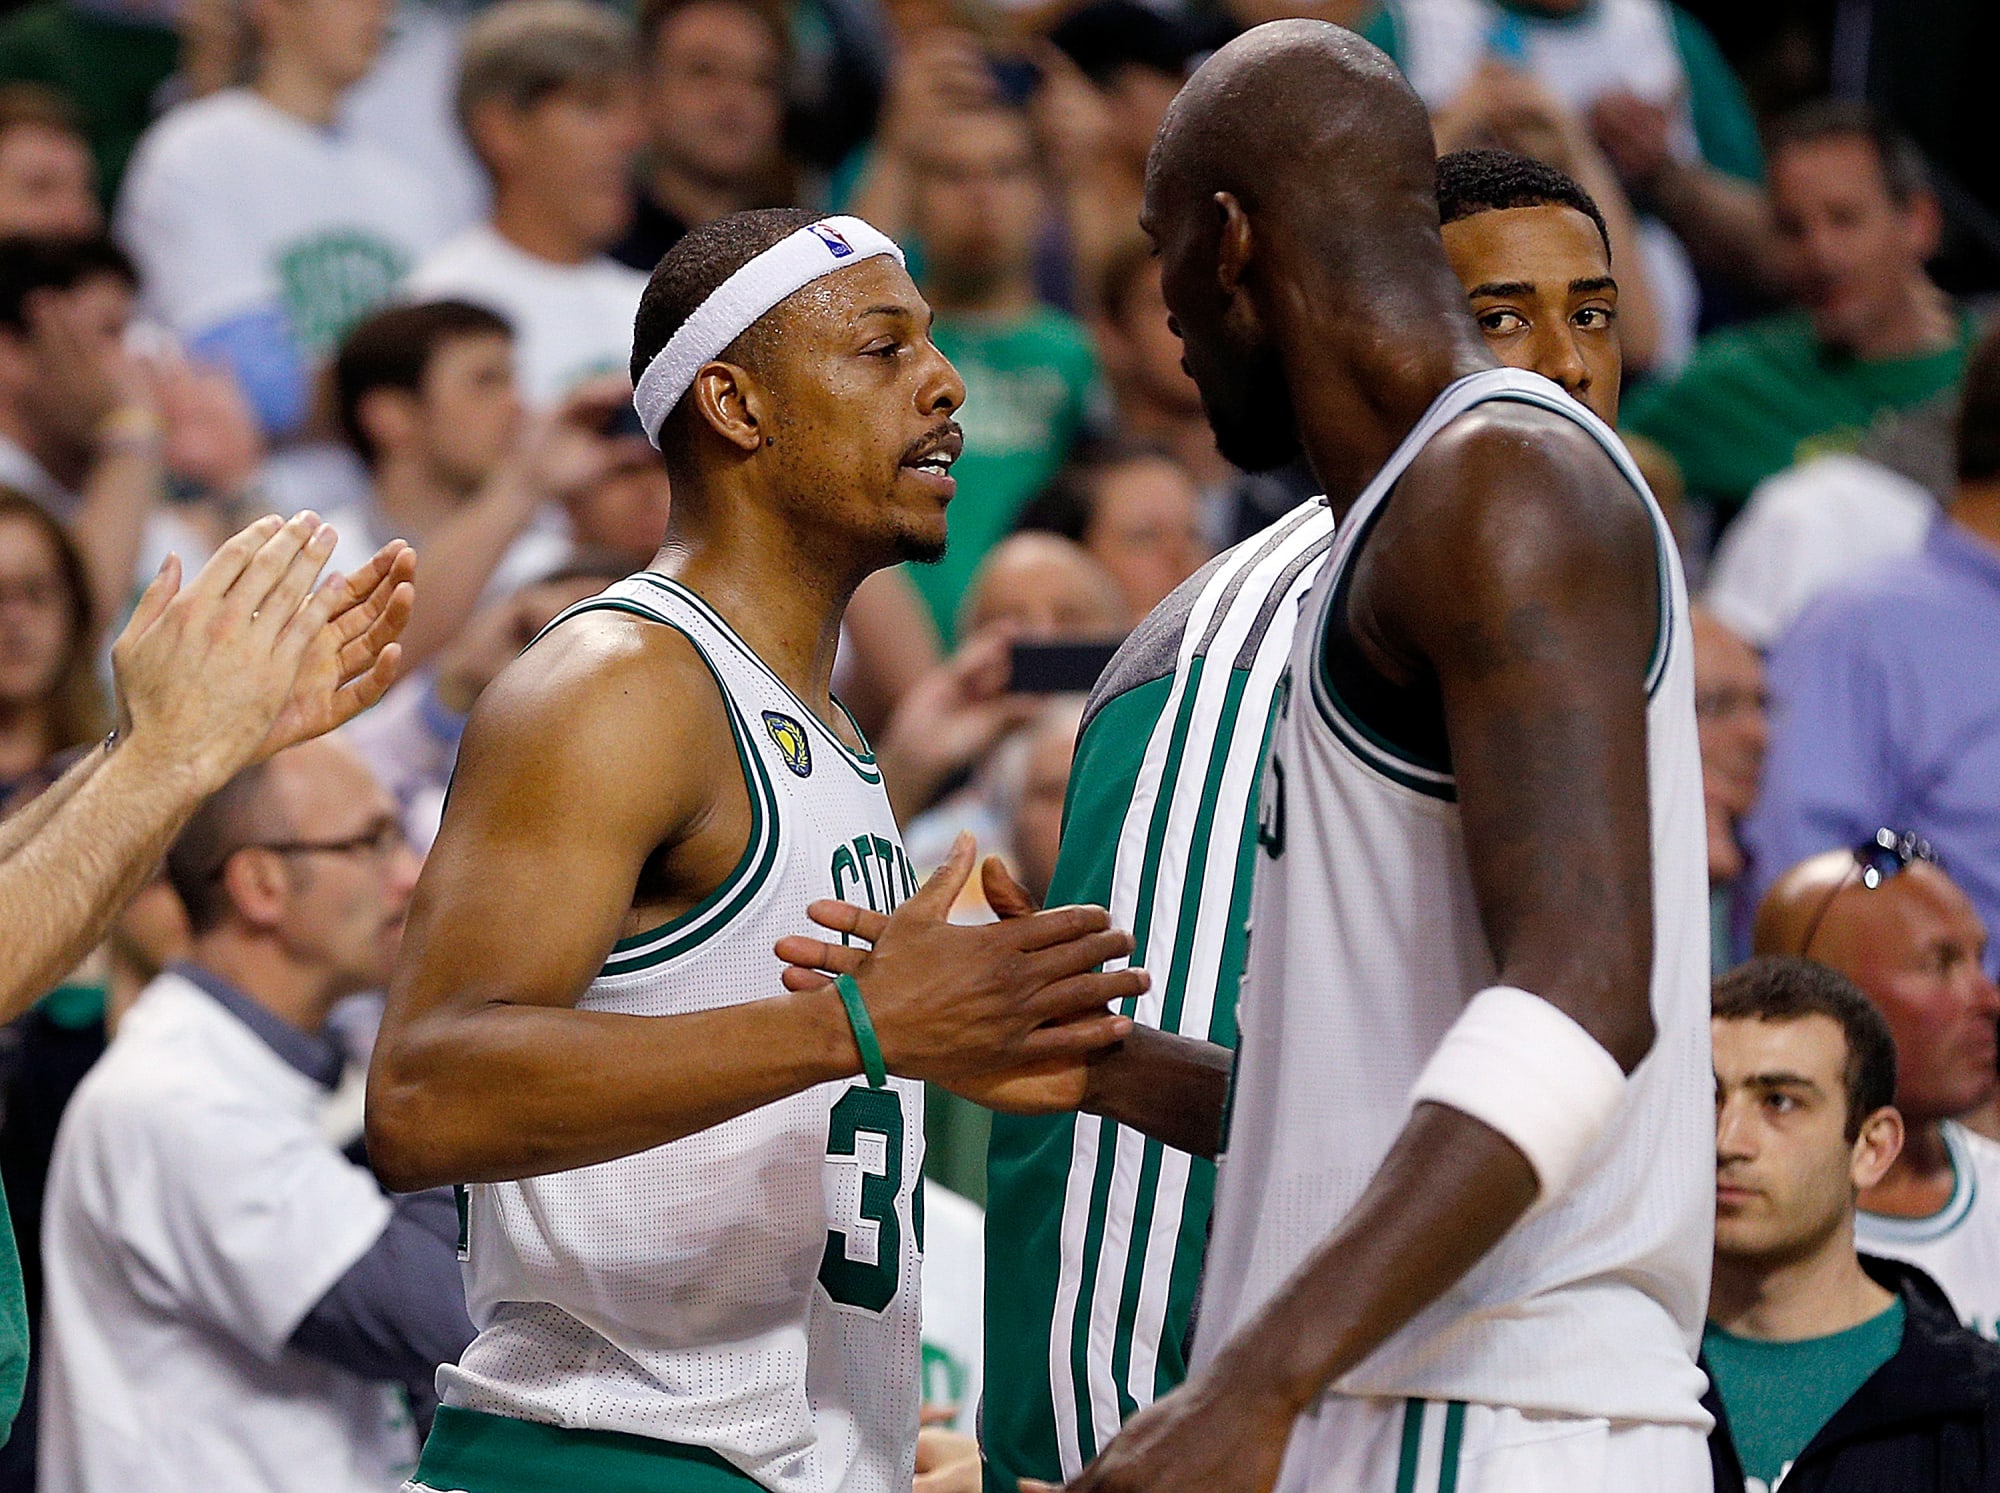 Boston Celtics All Time NBA 2K Roster Breakdown